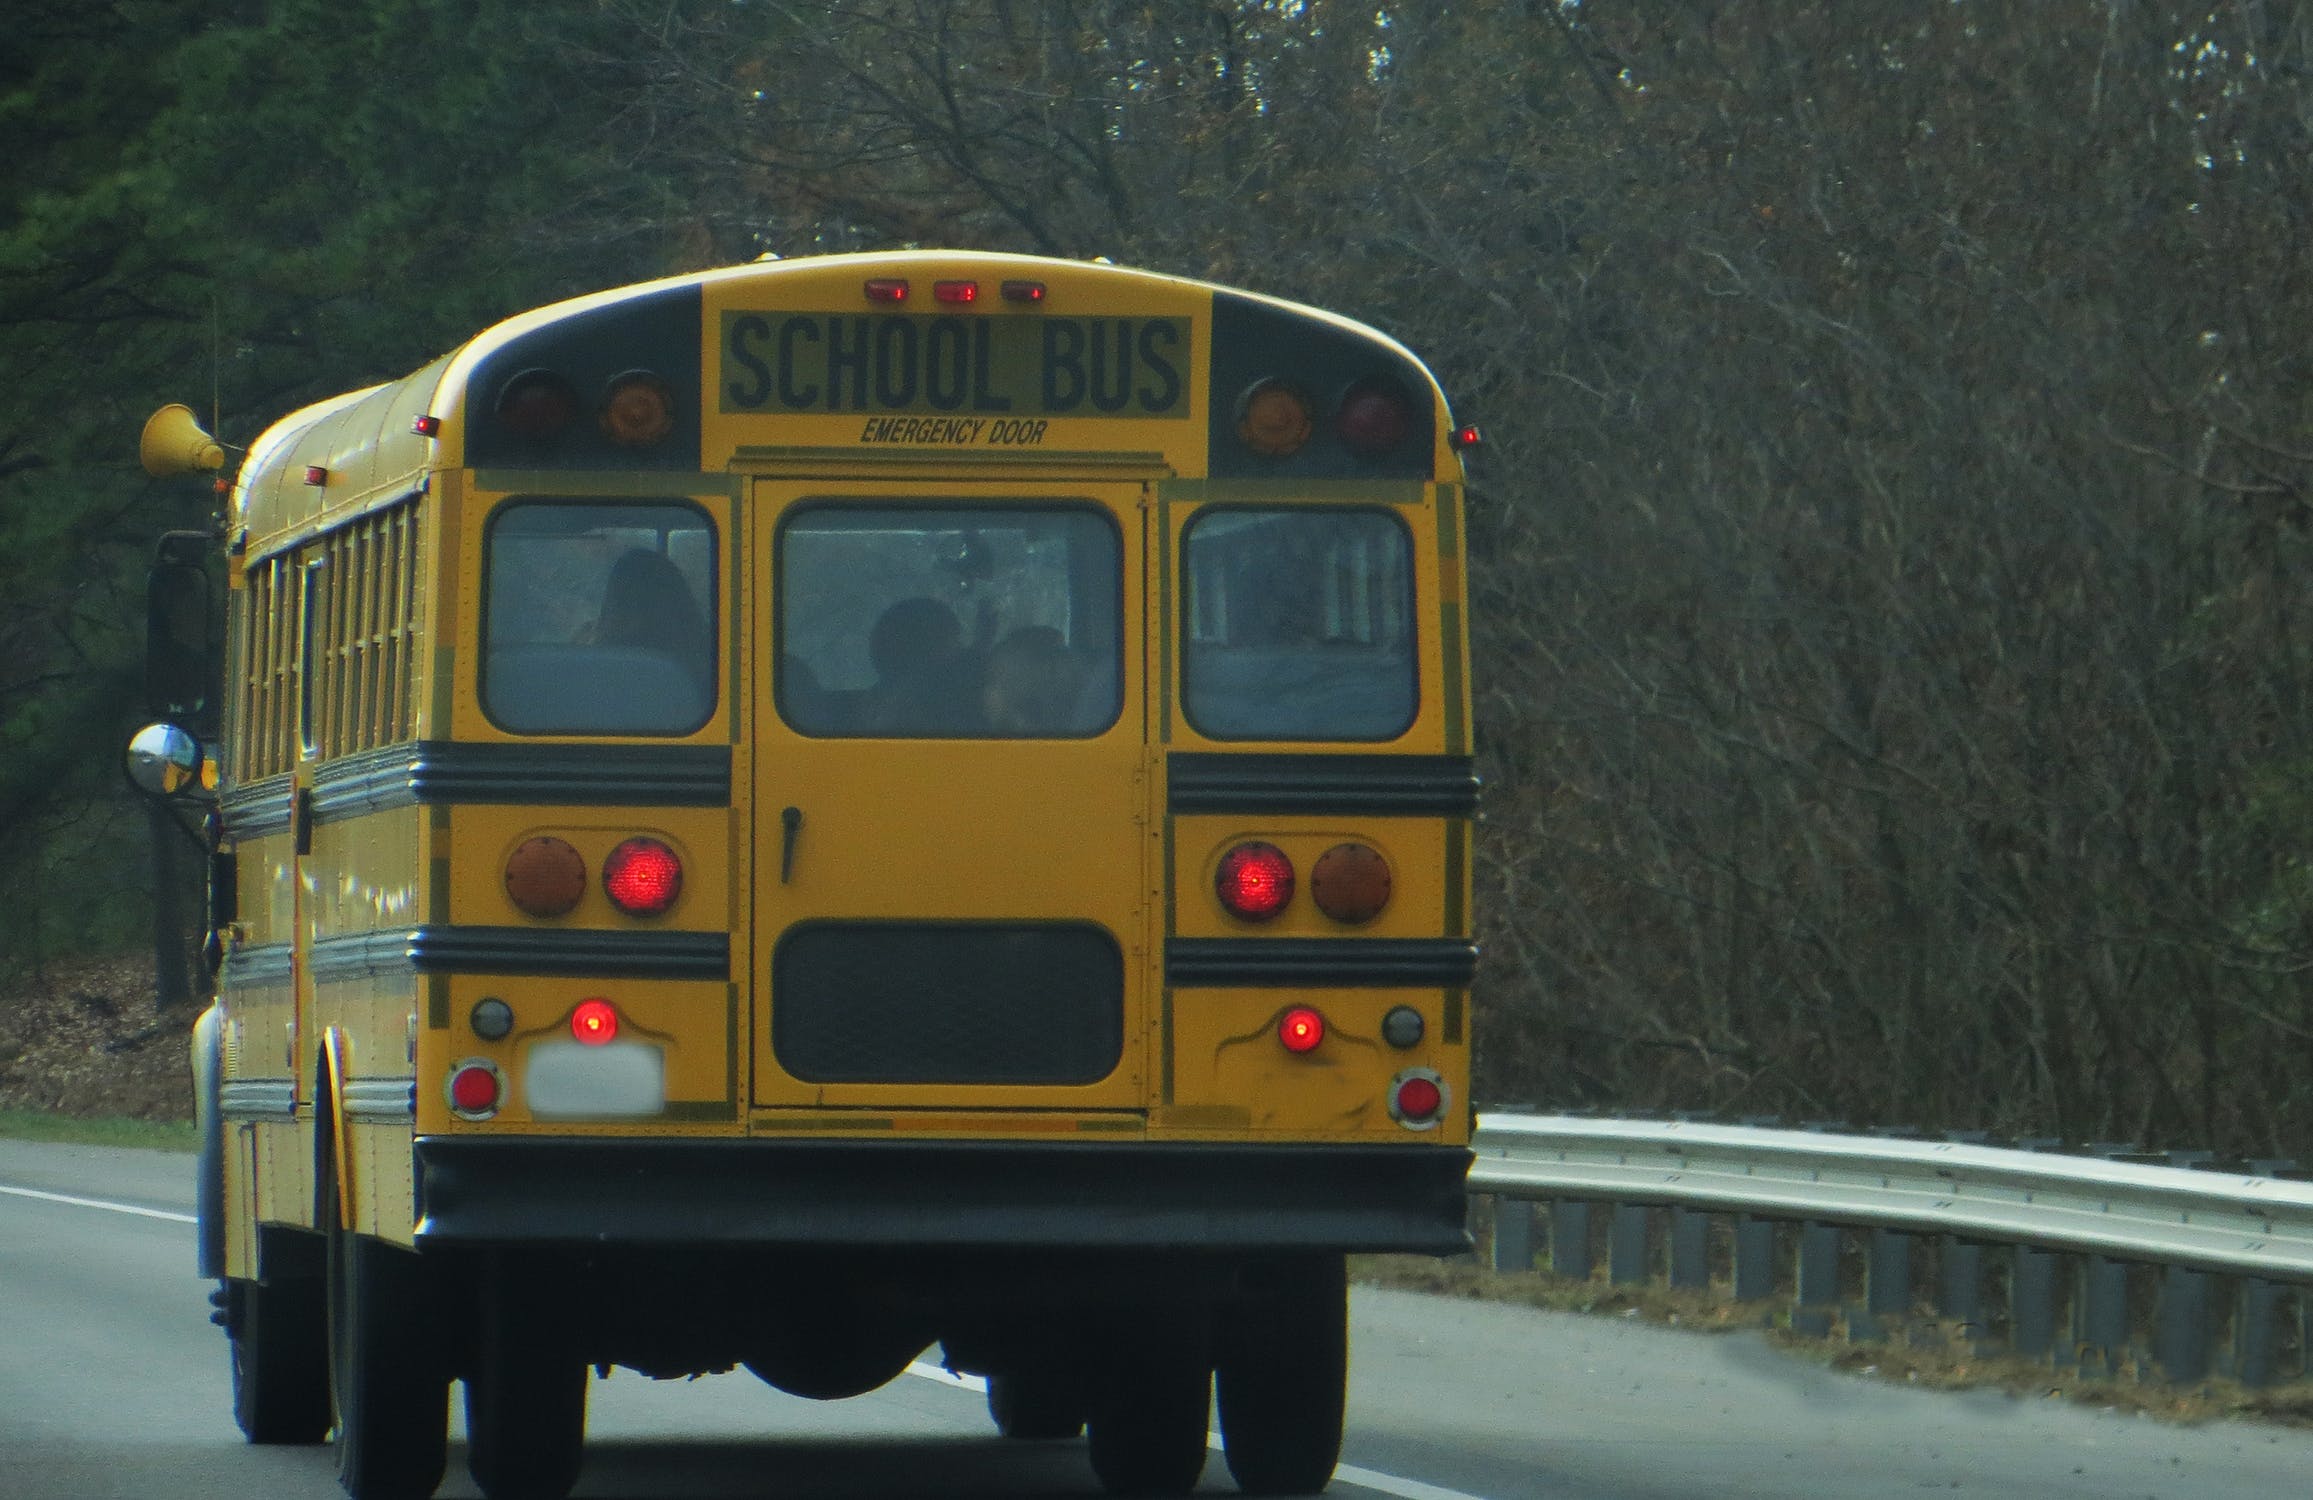 Autobús escolar en carretera. | Imagen: Pexels